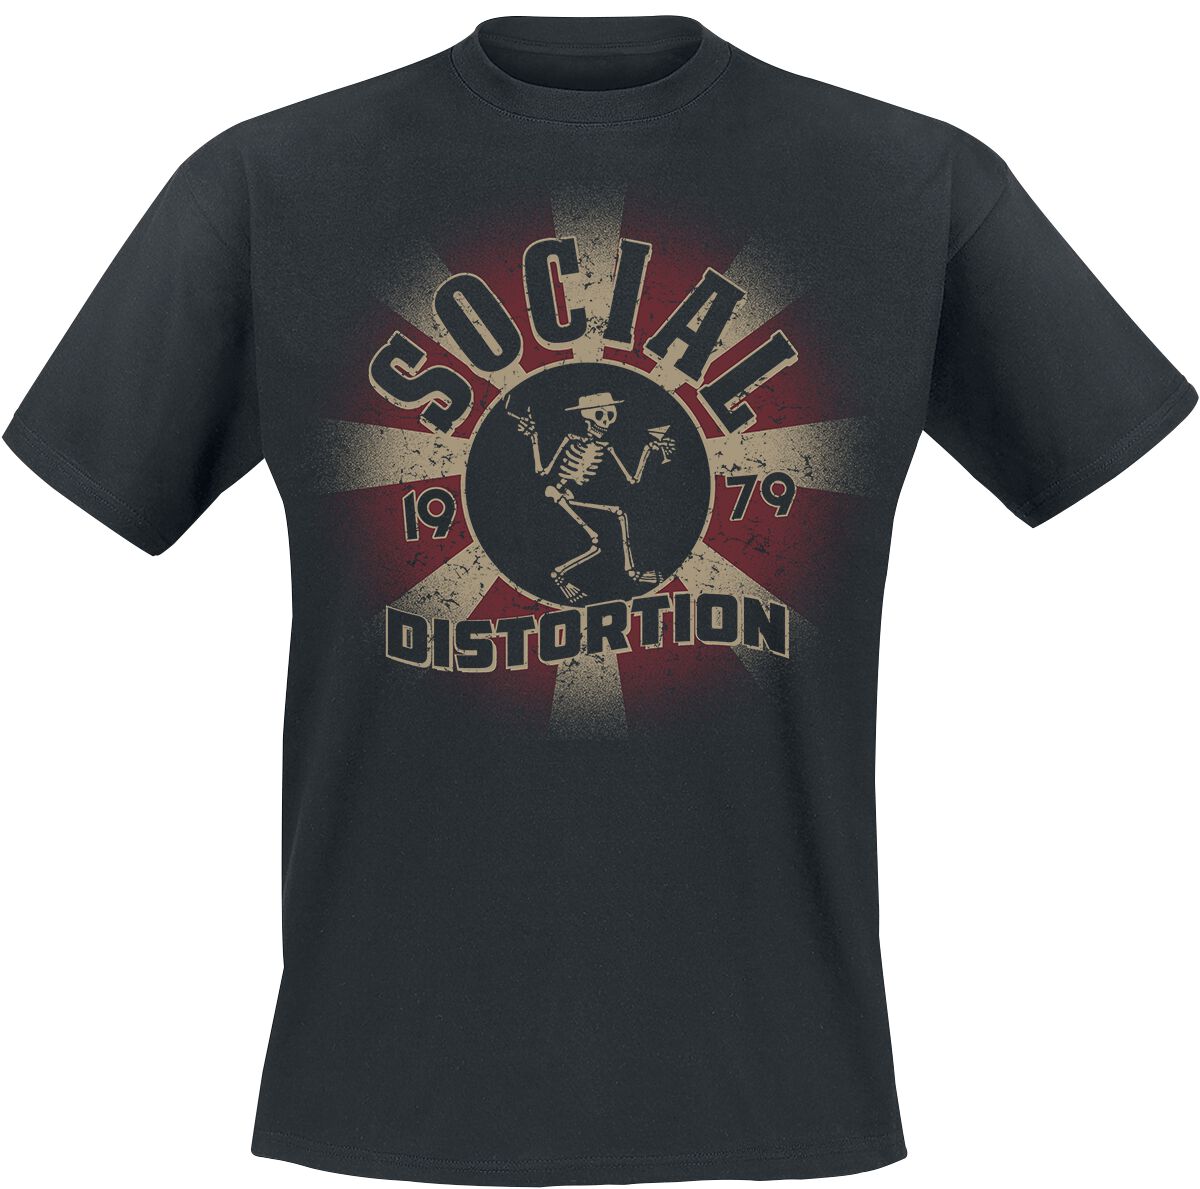 Social Distortion T-Shirt - Eclipse - M bis 3XL - für Männer - Größe L - schwarz  - Lizenziertes Merchandise!